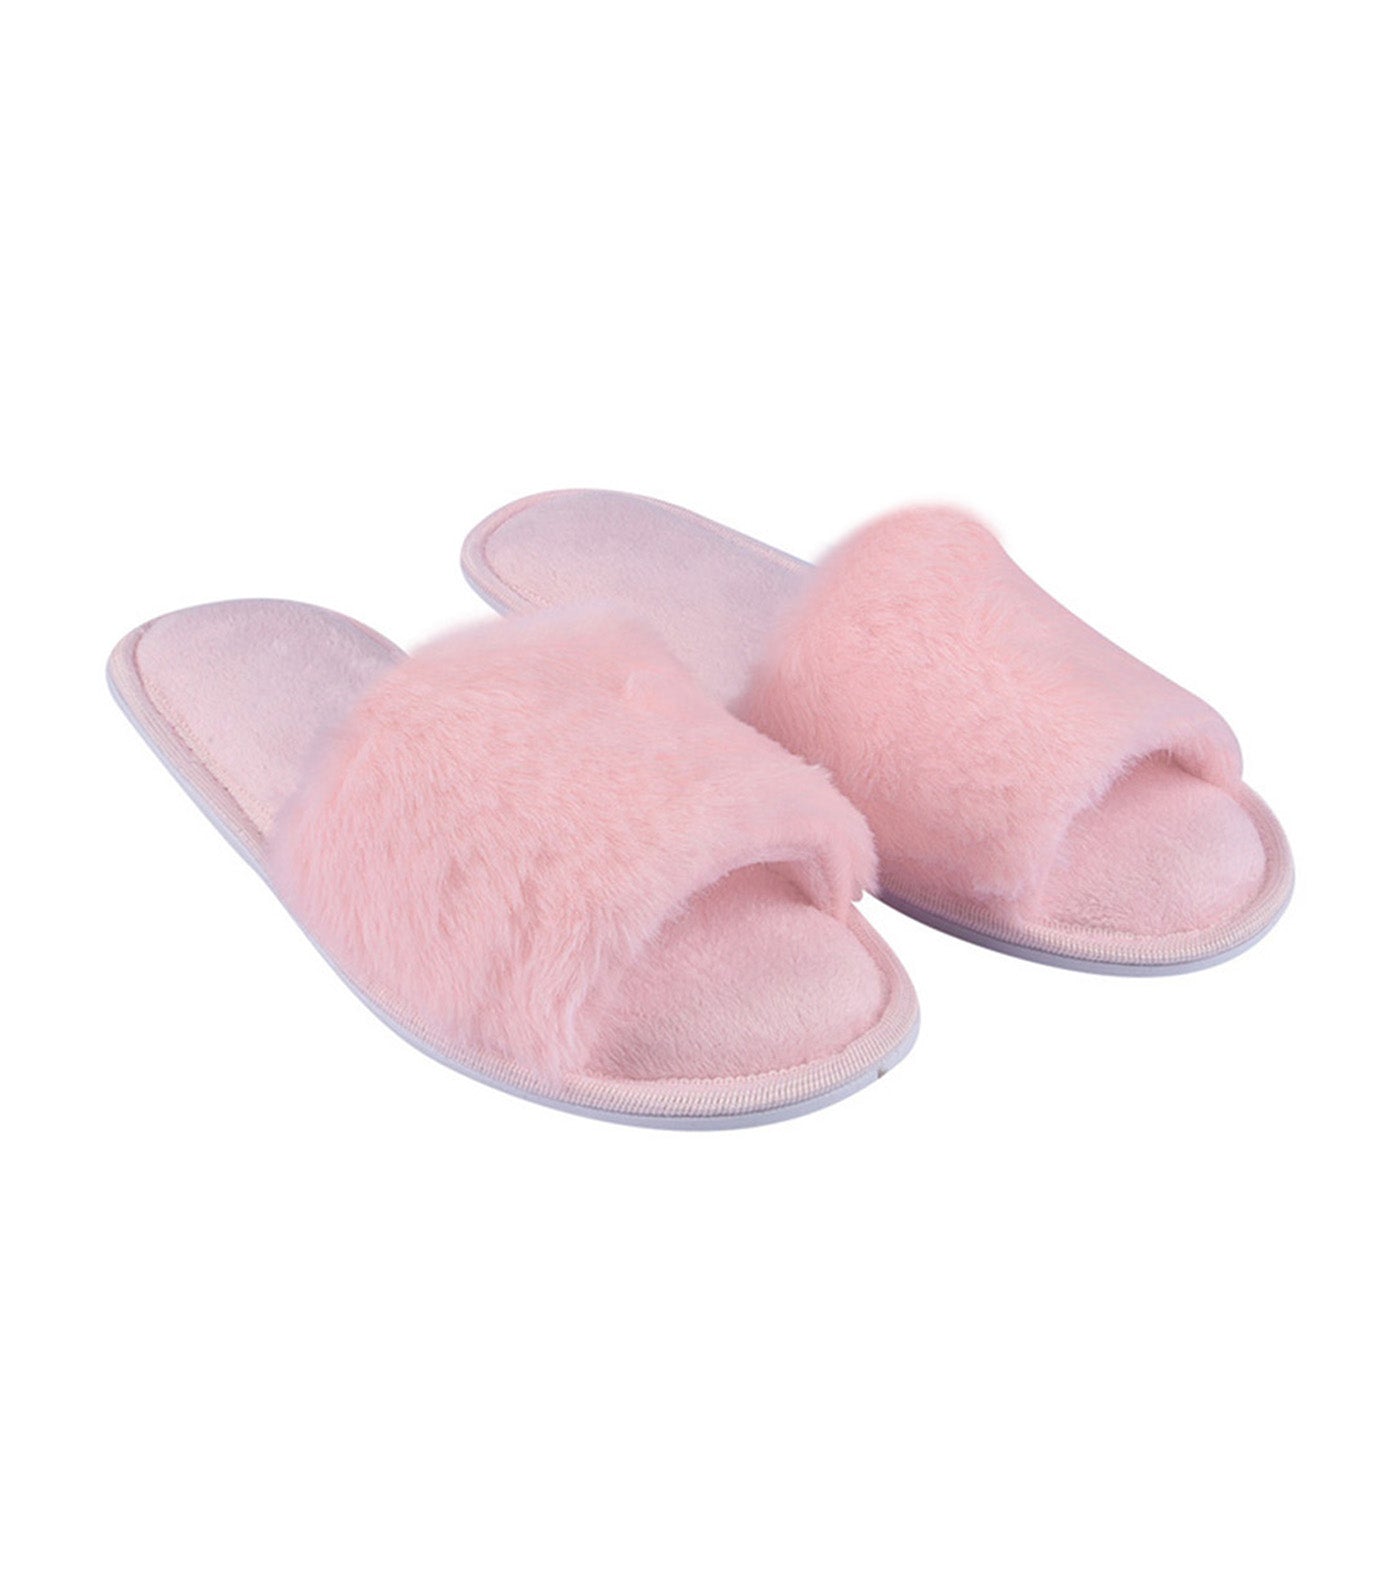 meet my feet pink ava slippers